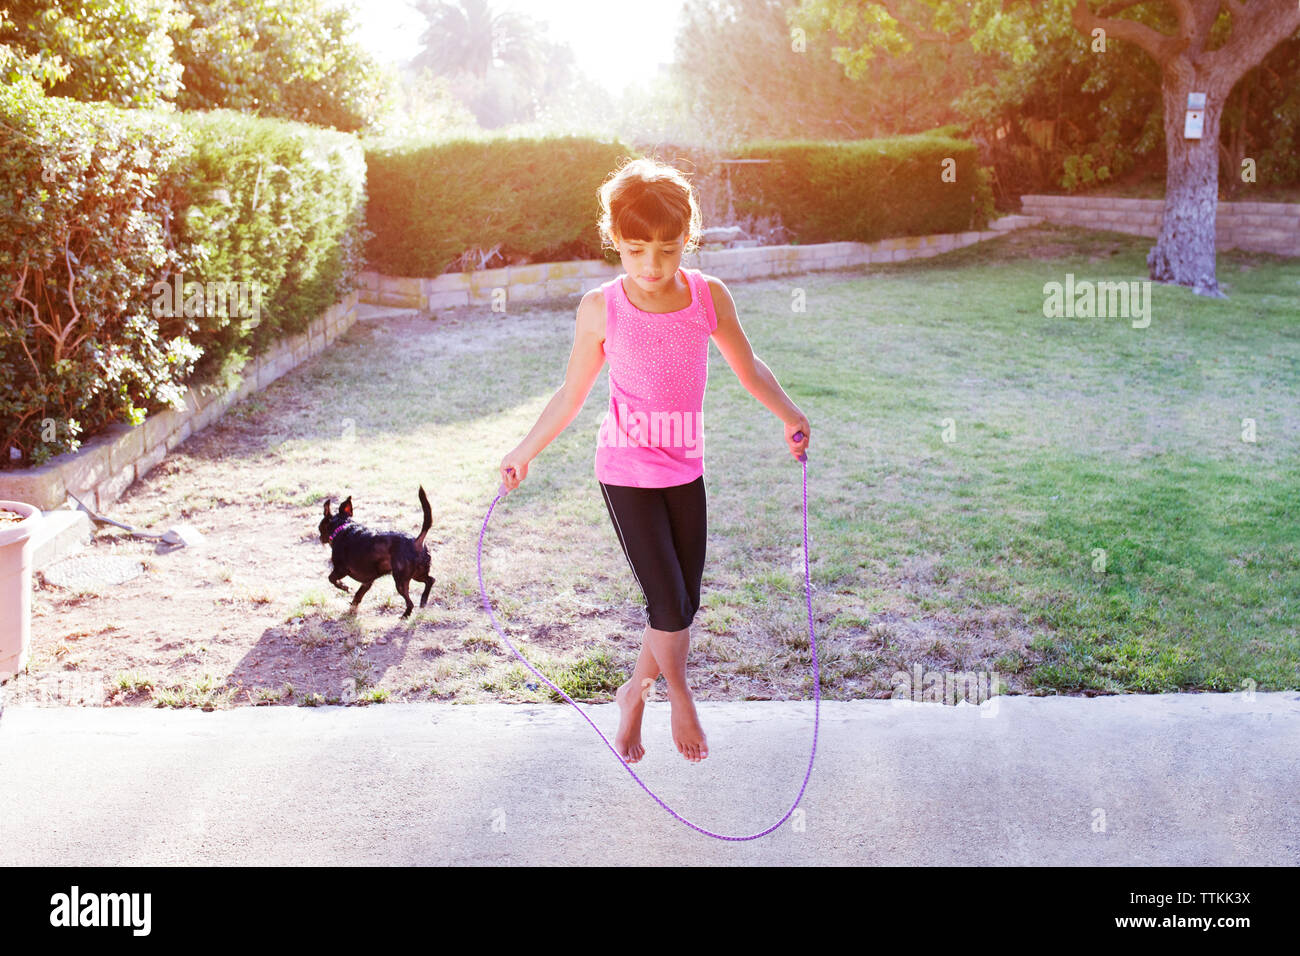 Chica saltando con cuerda en campo Foto de stock